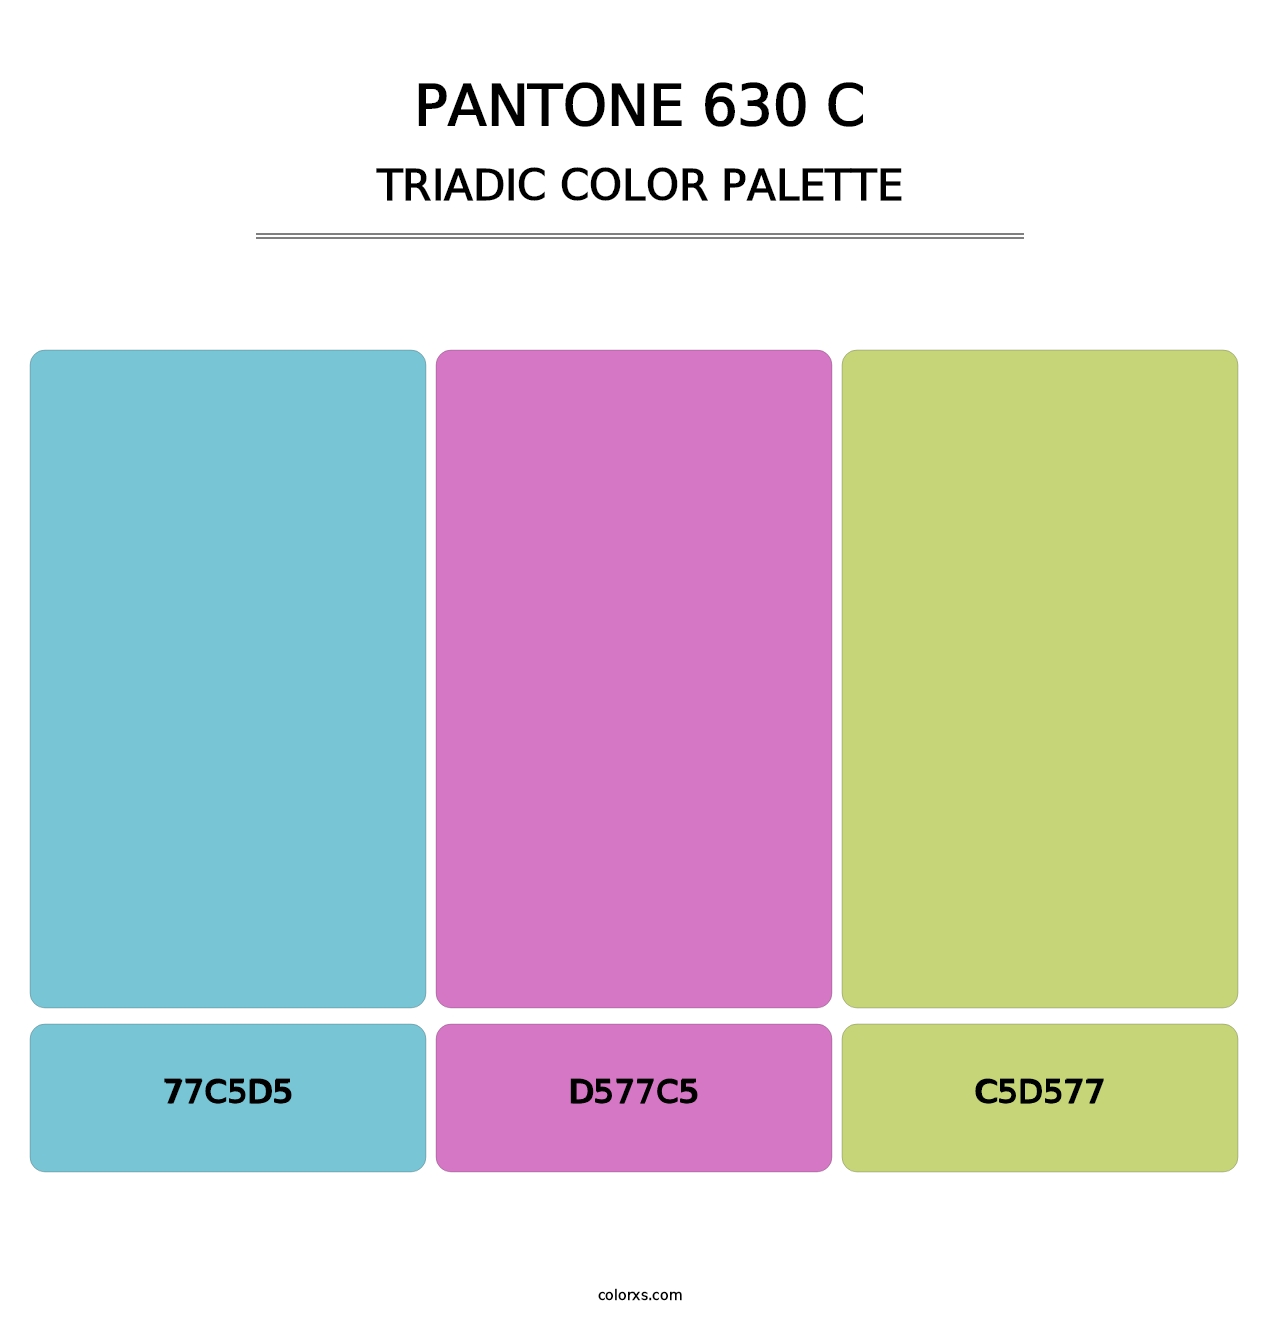 PANTONE 630 C - Triadic Color Palette